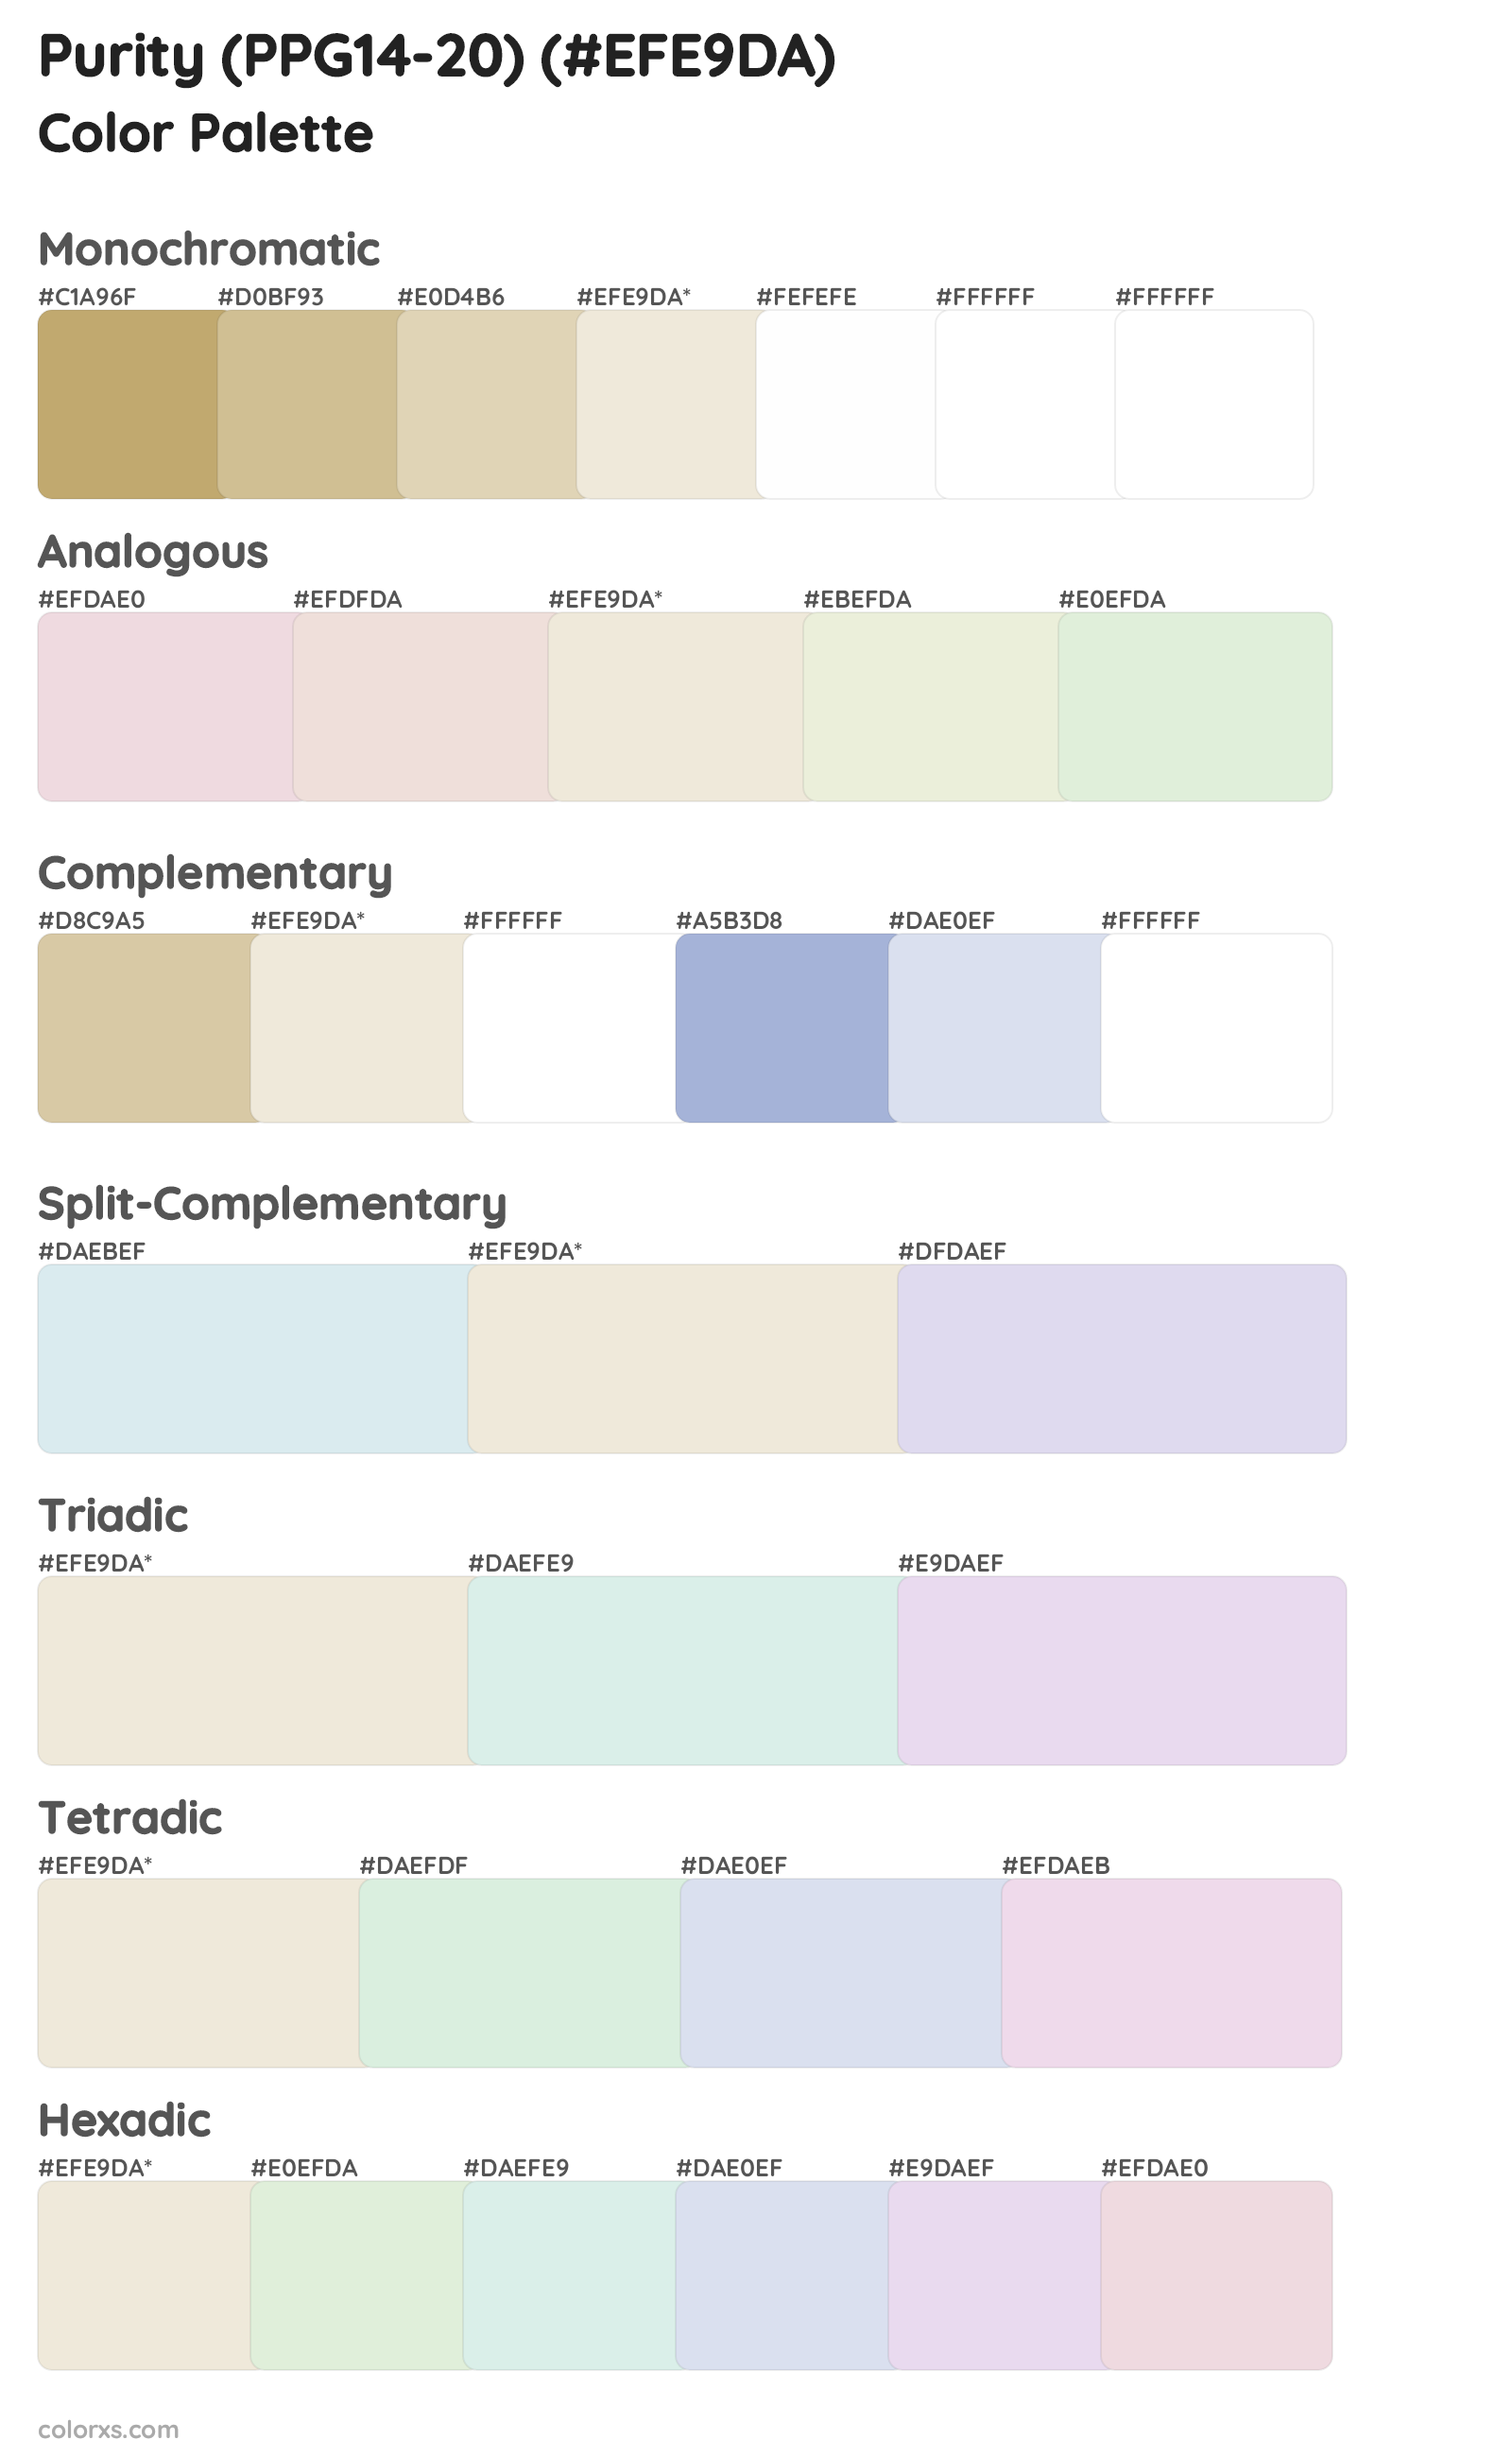 Purity (PPG14-20) Color Scheme Palettes